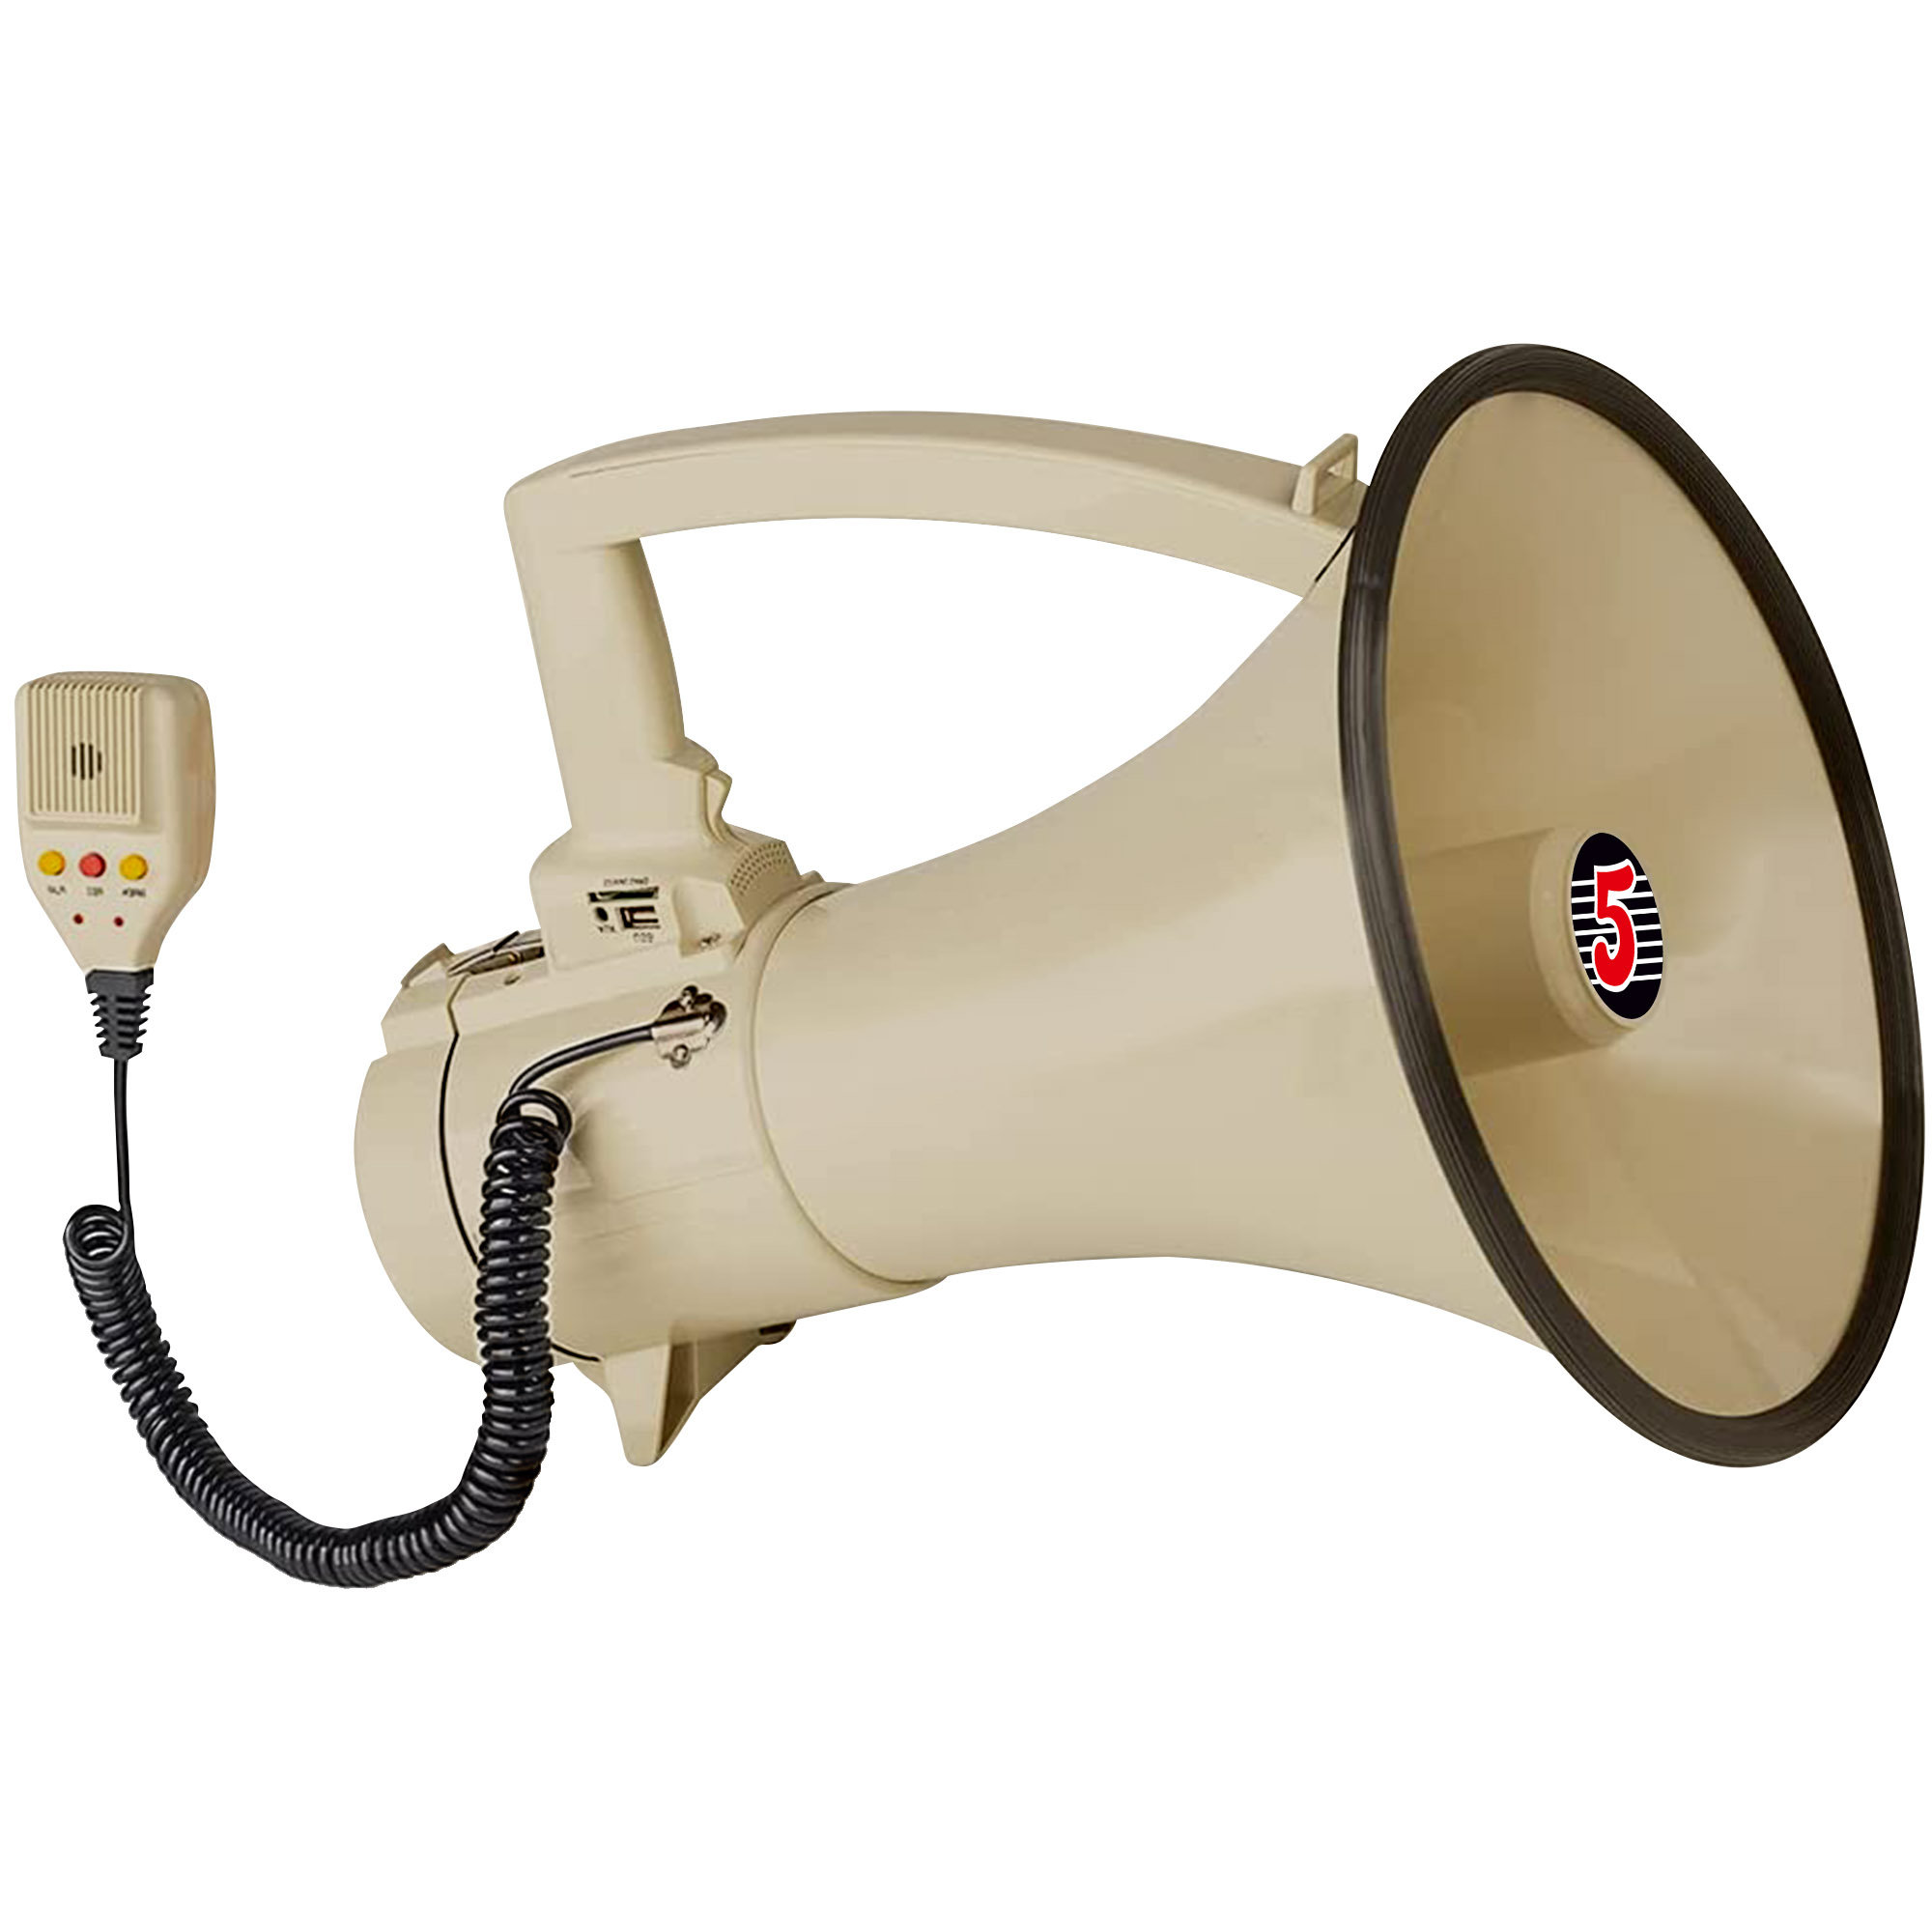 https://assets.wfcdn.com/im/25247391/compr-r85/2490/249078922/5-core-professional-megaphone-70w-pa-speaker-w-talk-siren-record-usb-input.jpg